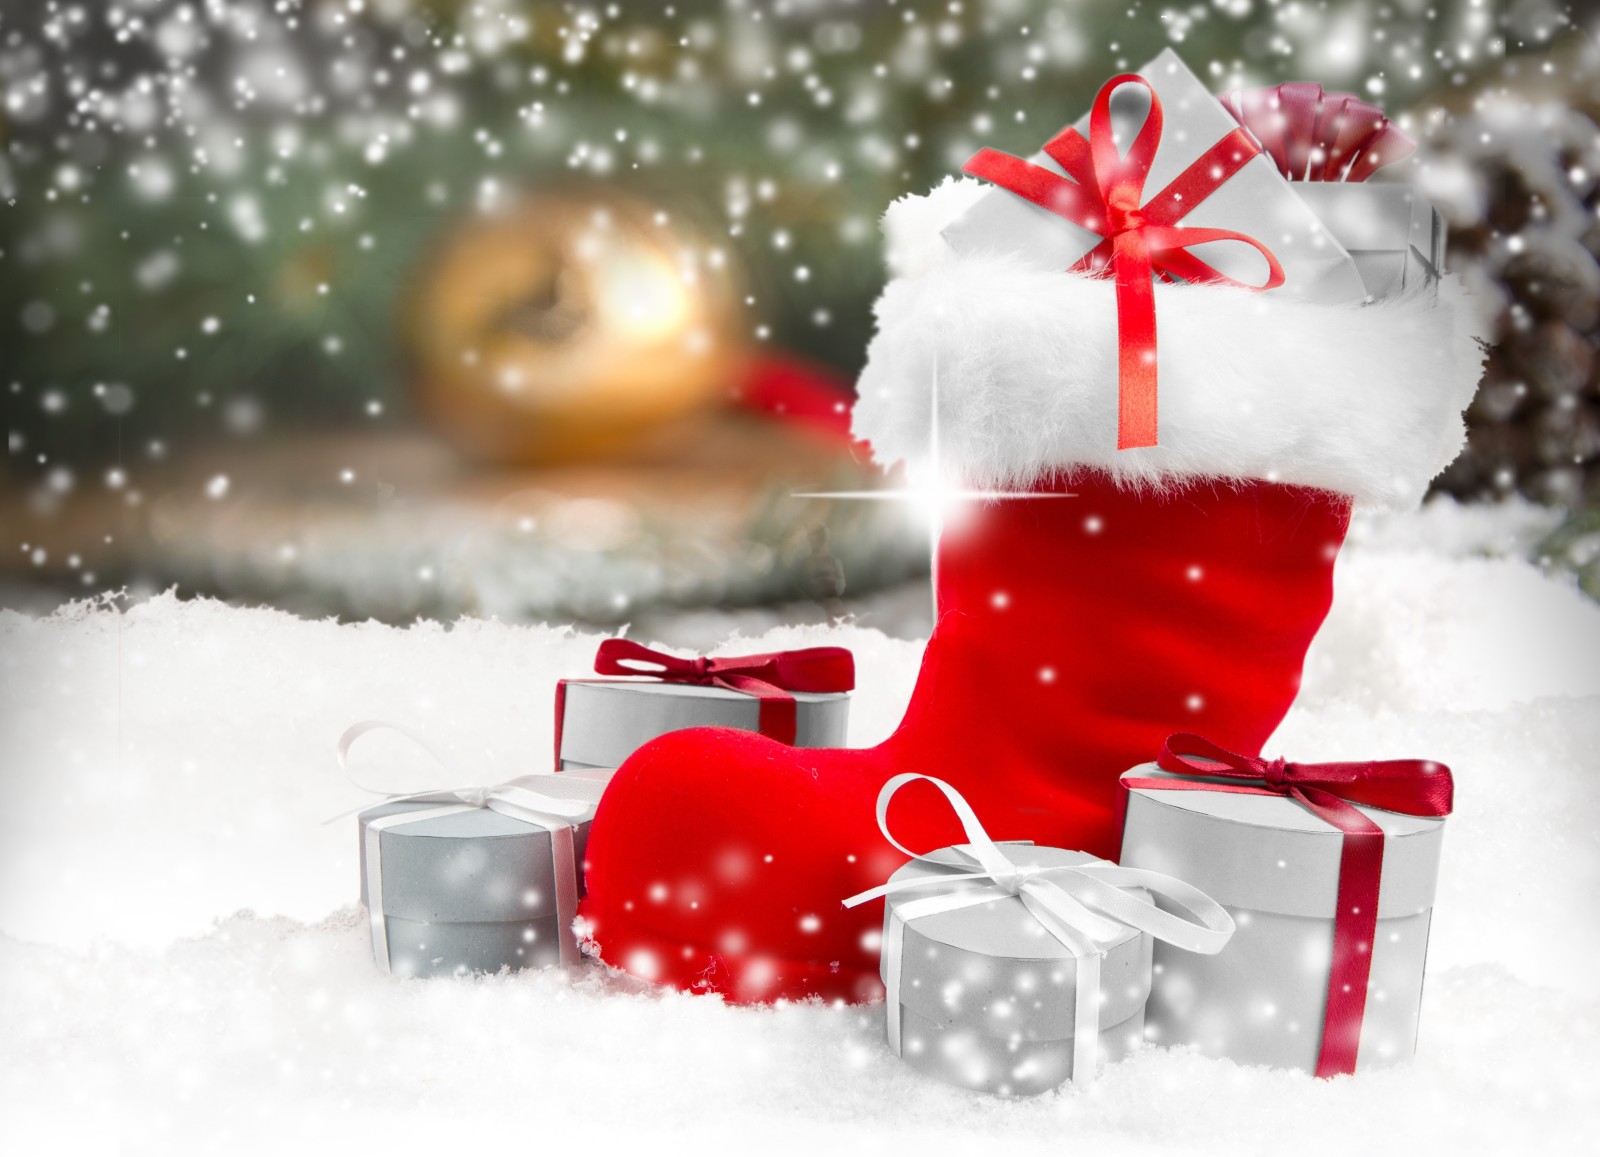 tuyết, Năm mới, Giáng sinh, trang trí, Chúc mừng, mùa đông, những món quà